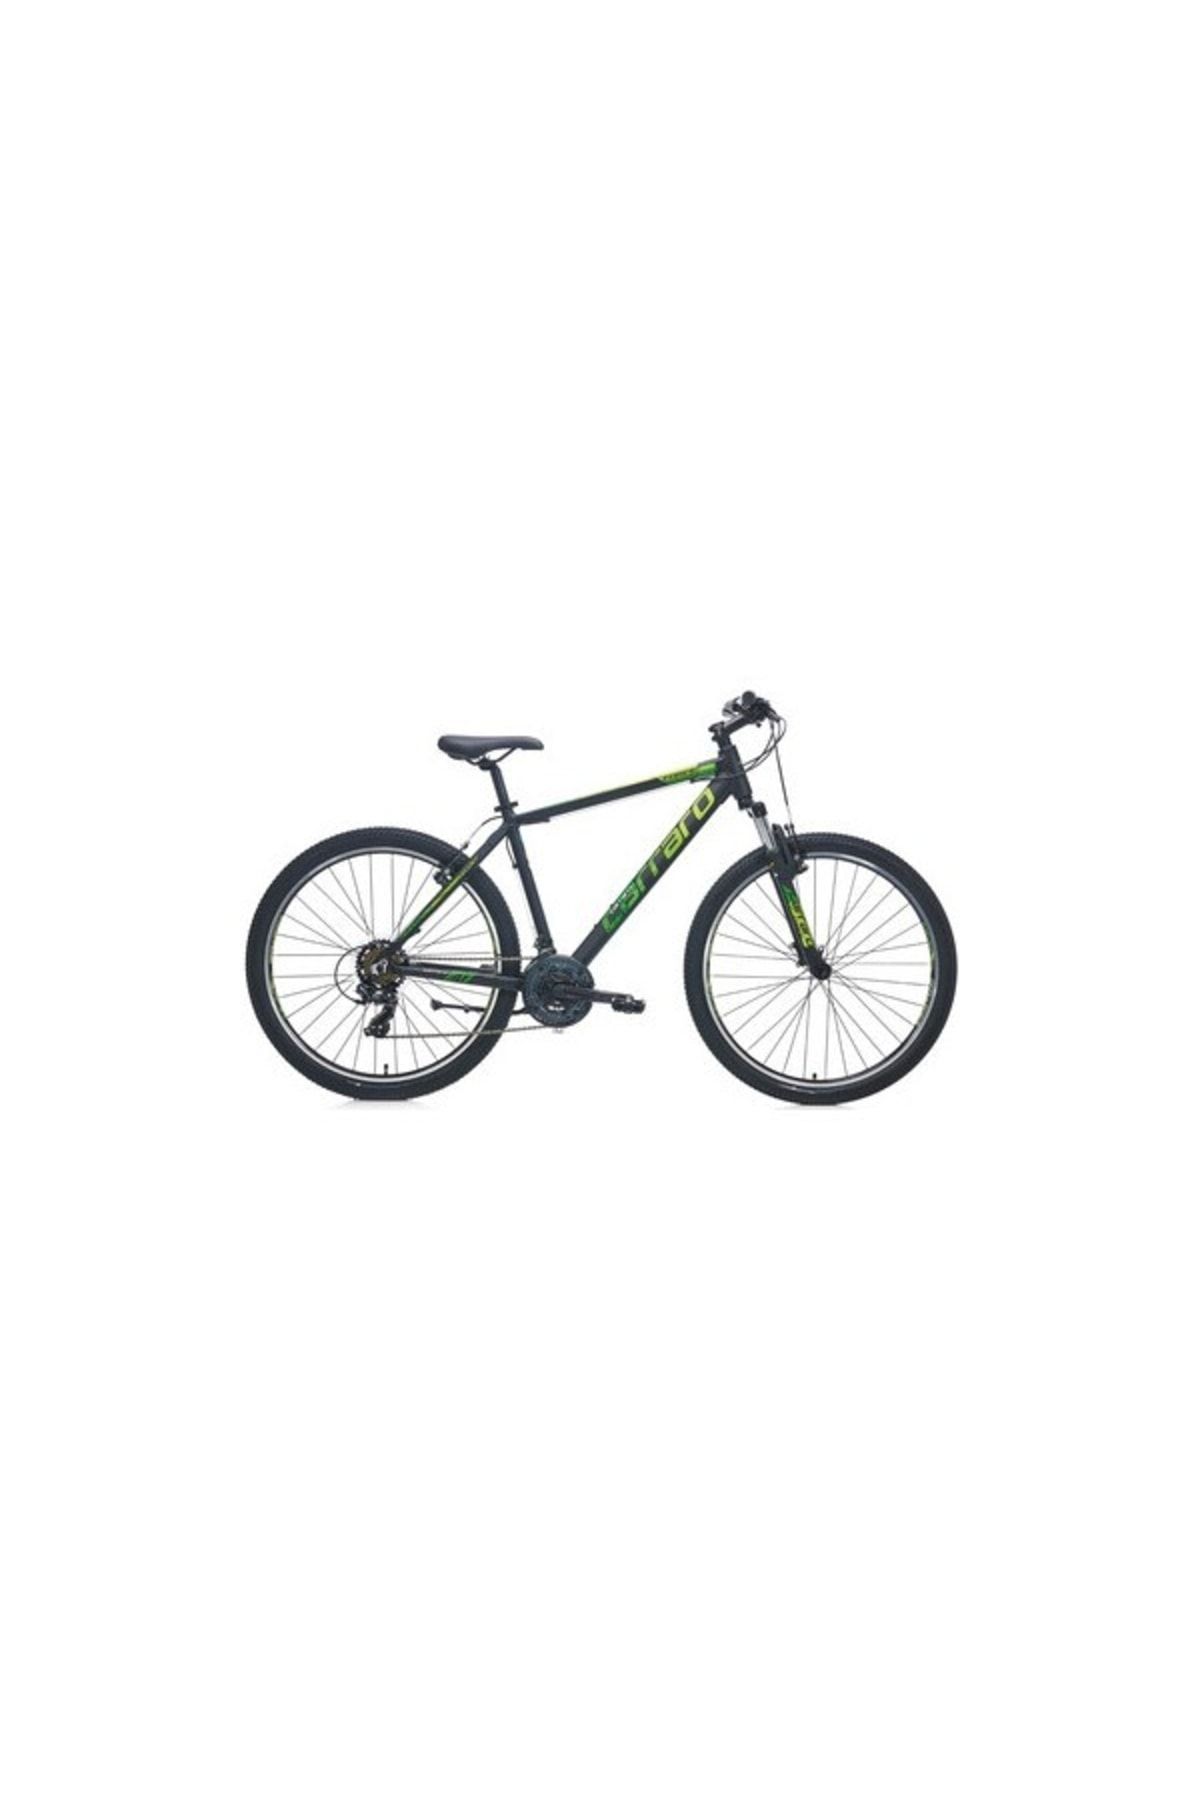 Carraro Force 700 Dağ Bisikleti 27.5 Jant 21 Vites Siyah Yeşil 48cm